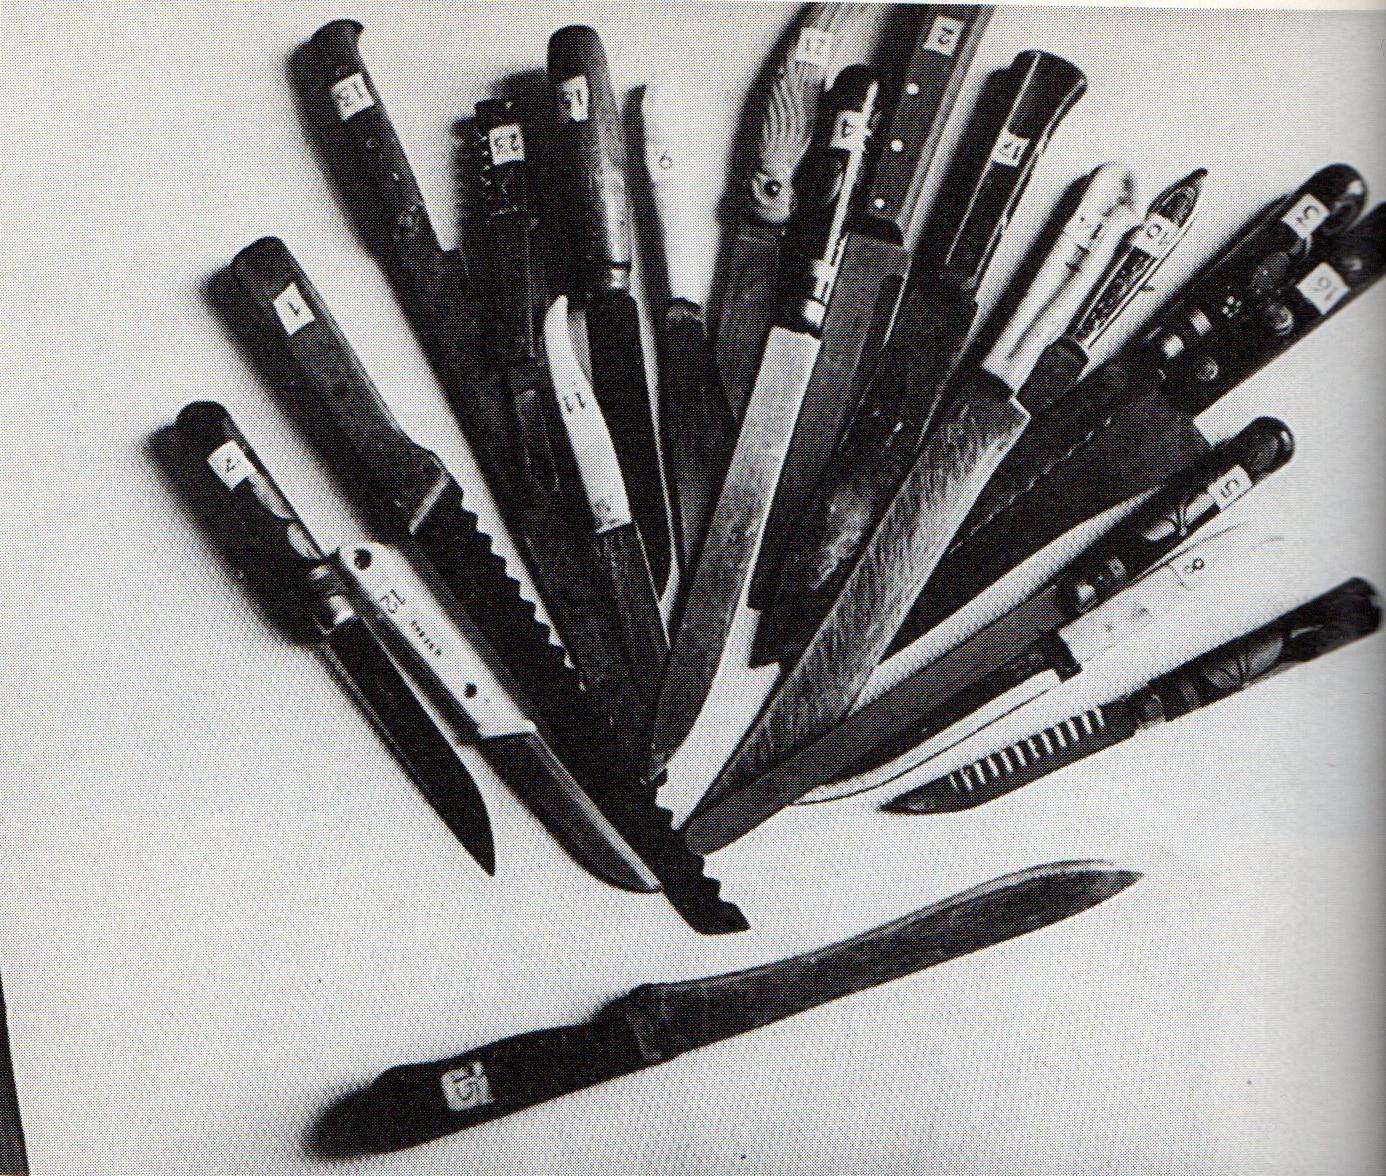 Bộ sưu tập dao được tìm thấy tại nhà của Andrei Chikatilo